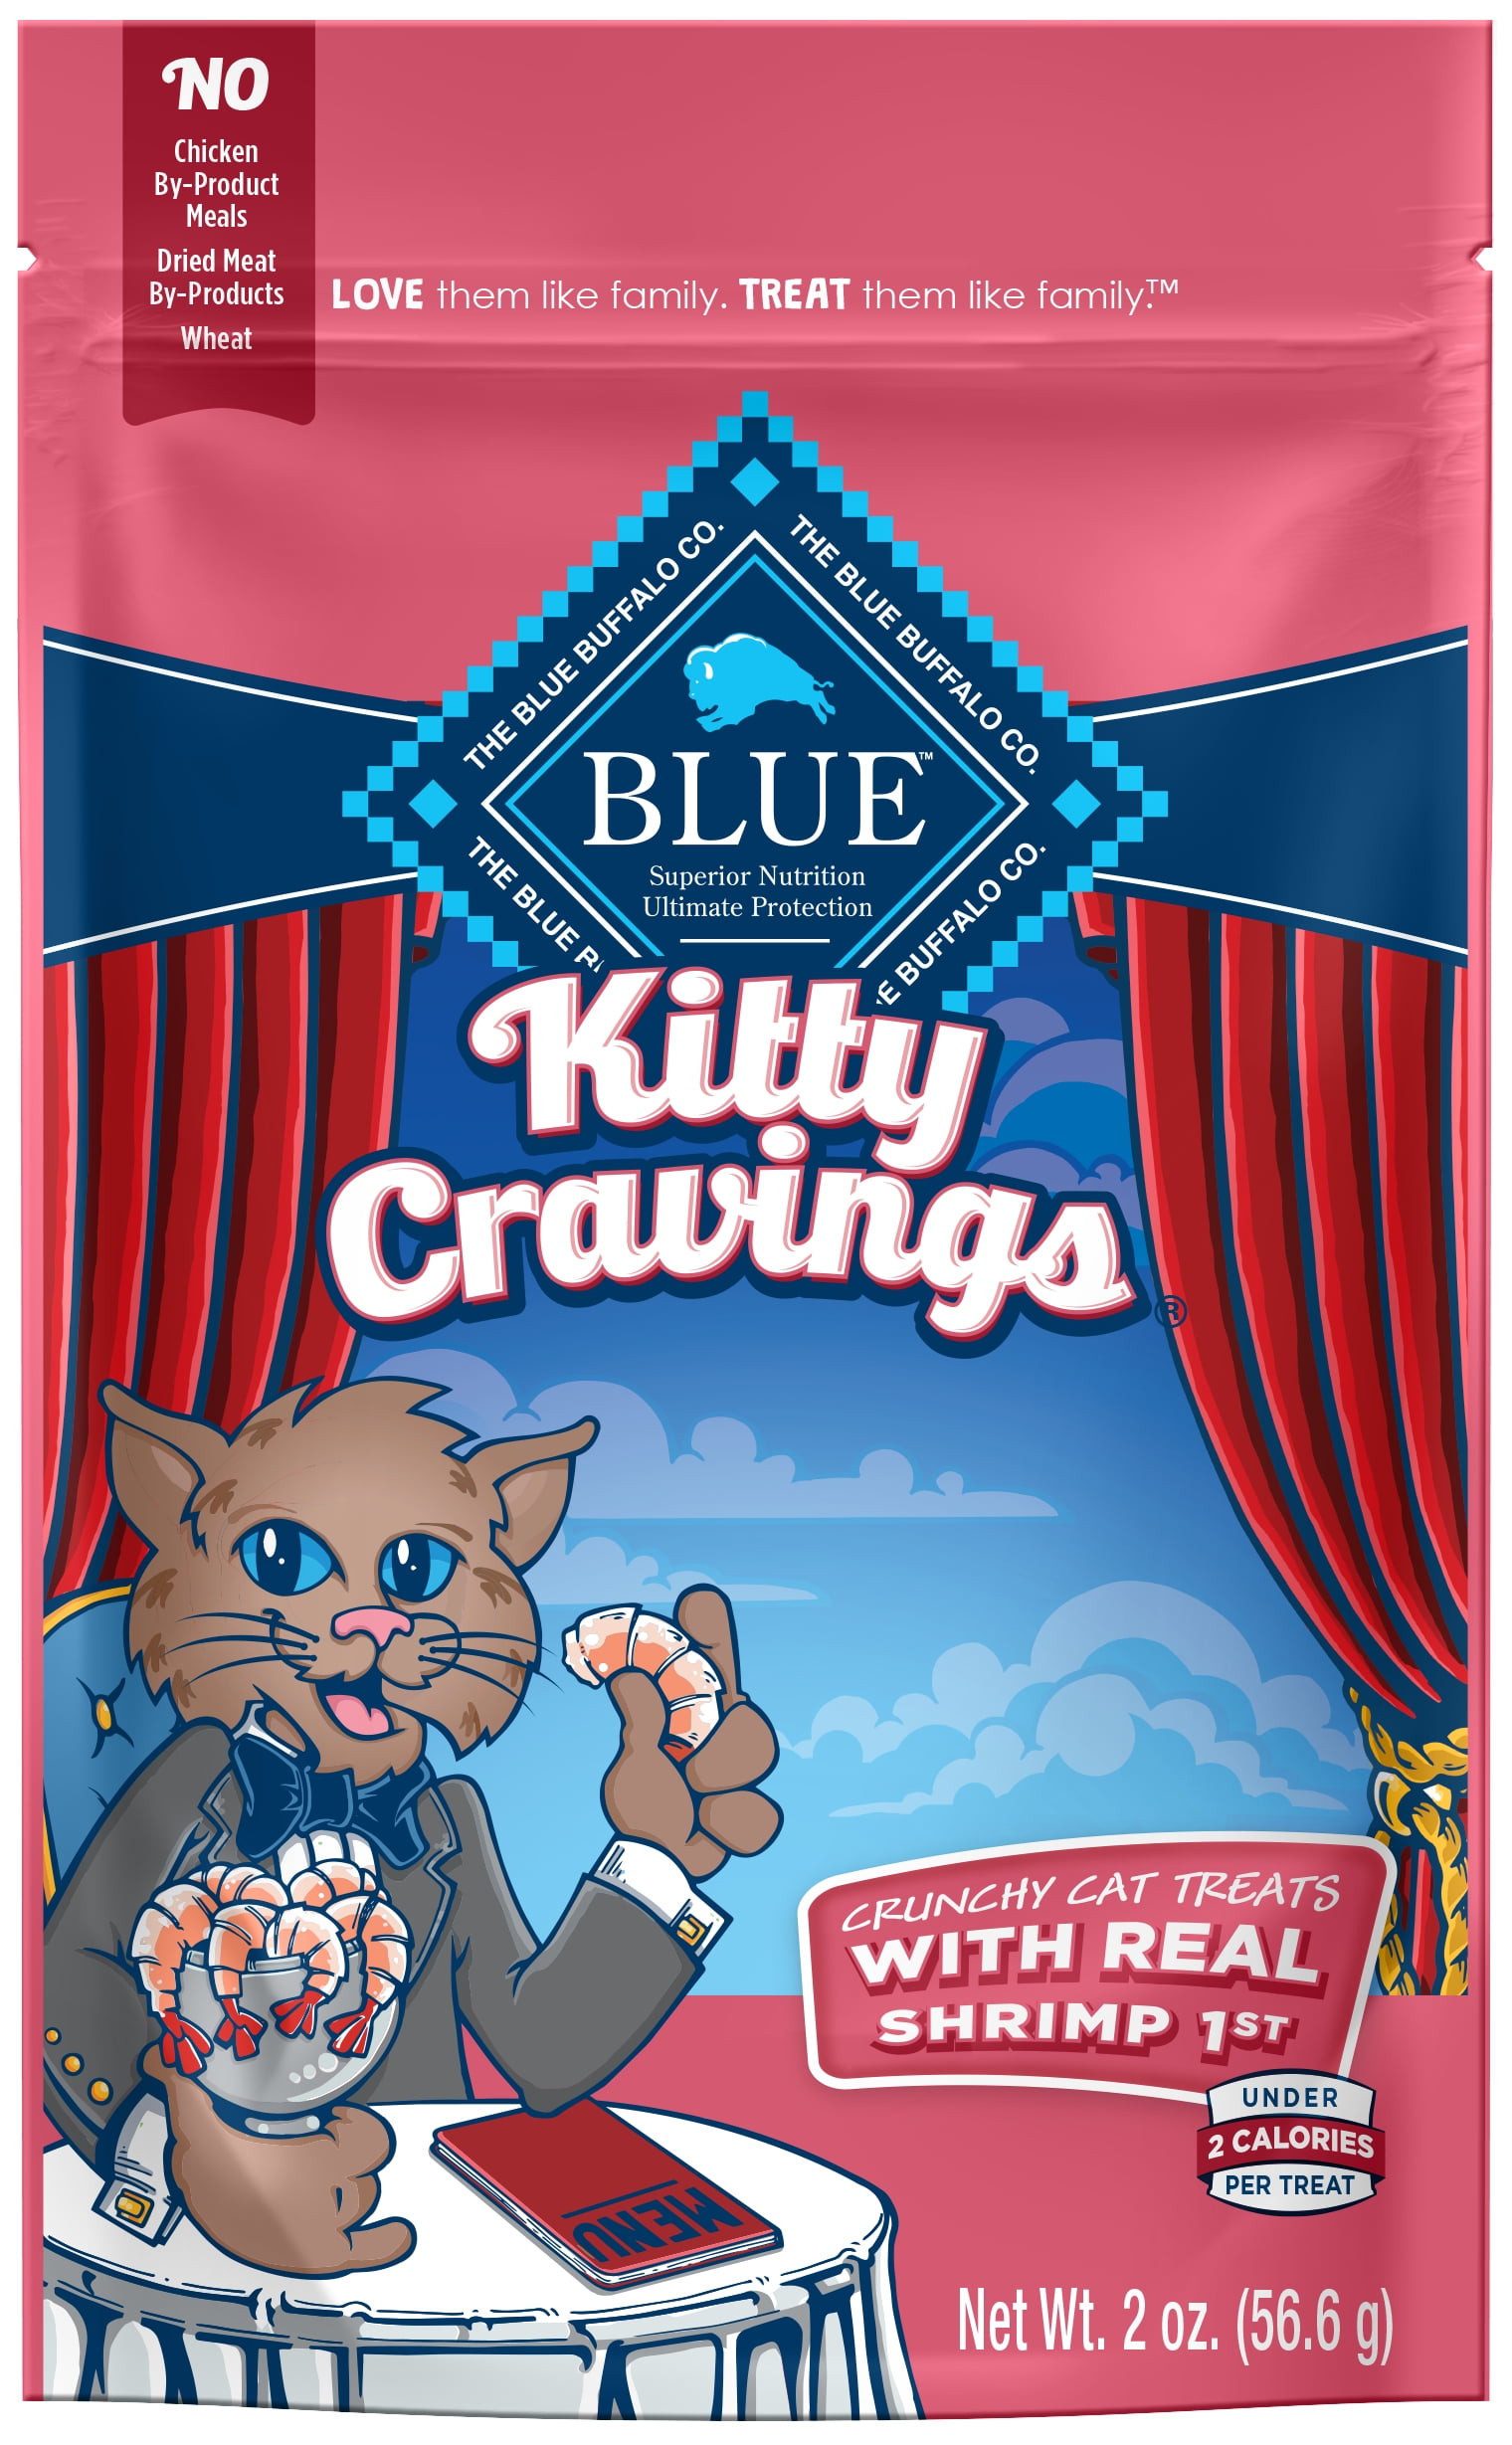 Blue Buffalo Kitty Cravings Crunchy Cat Treats